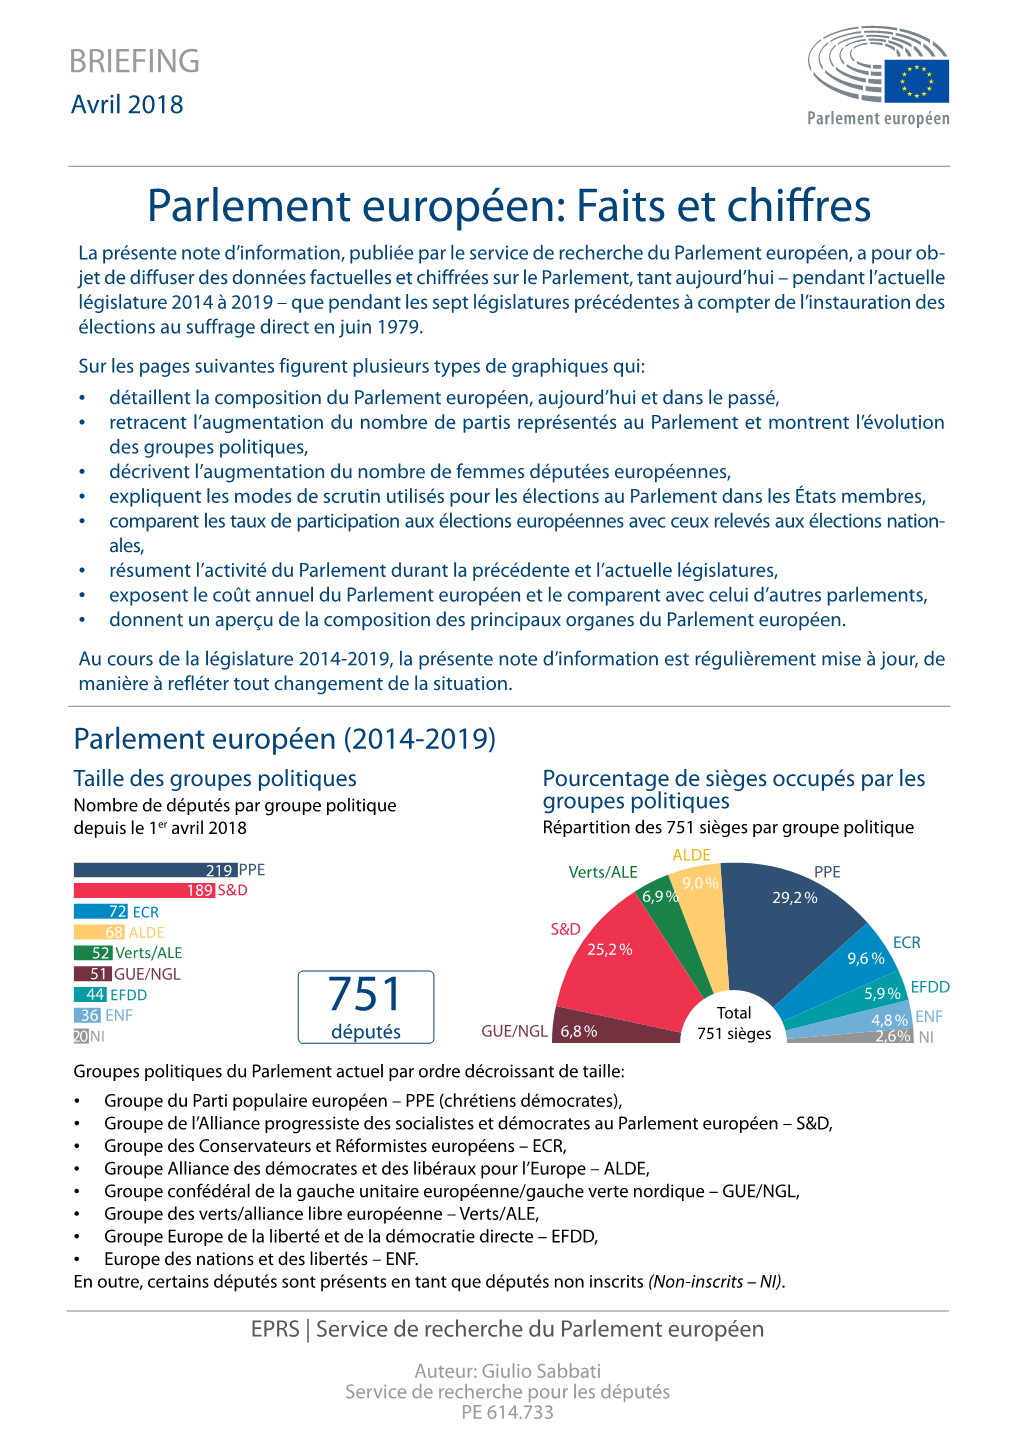 Parlement Européen Faits Et Chiffres (Avril 2018)